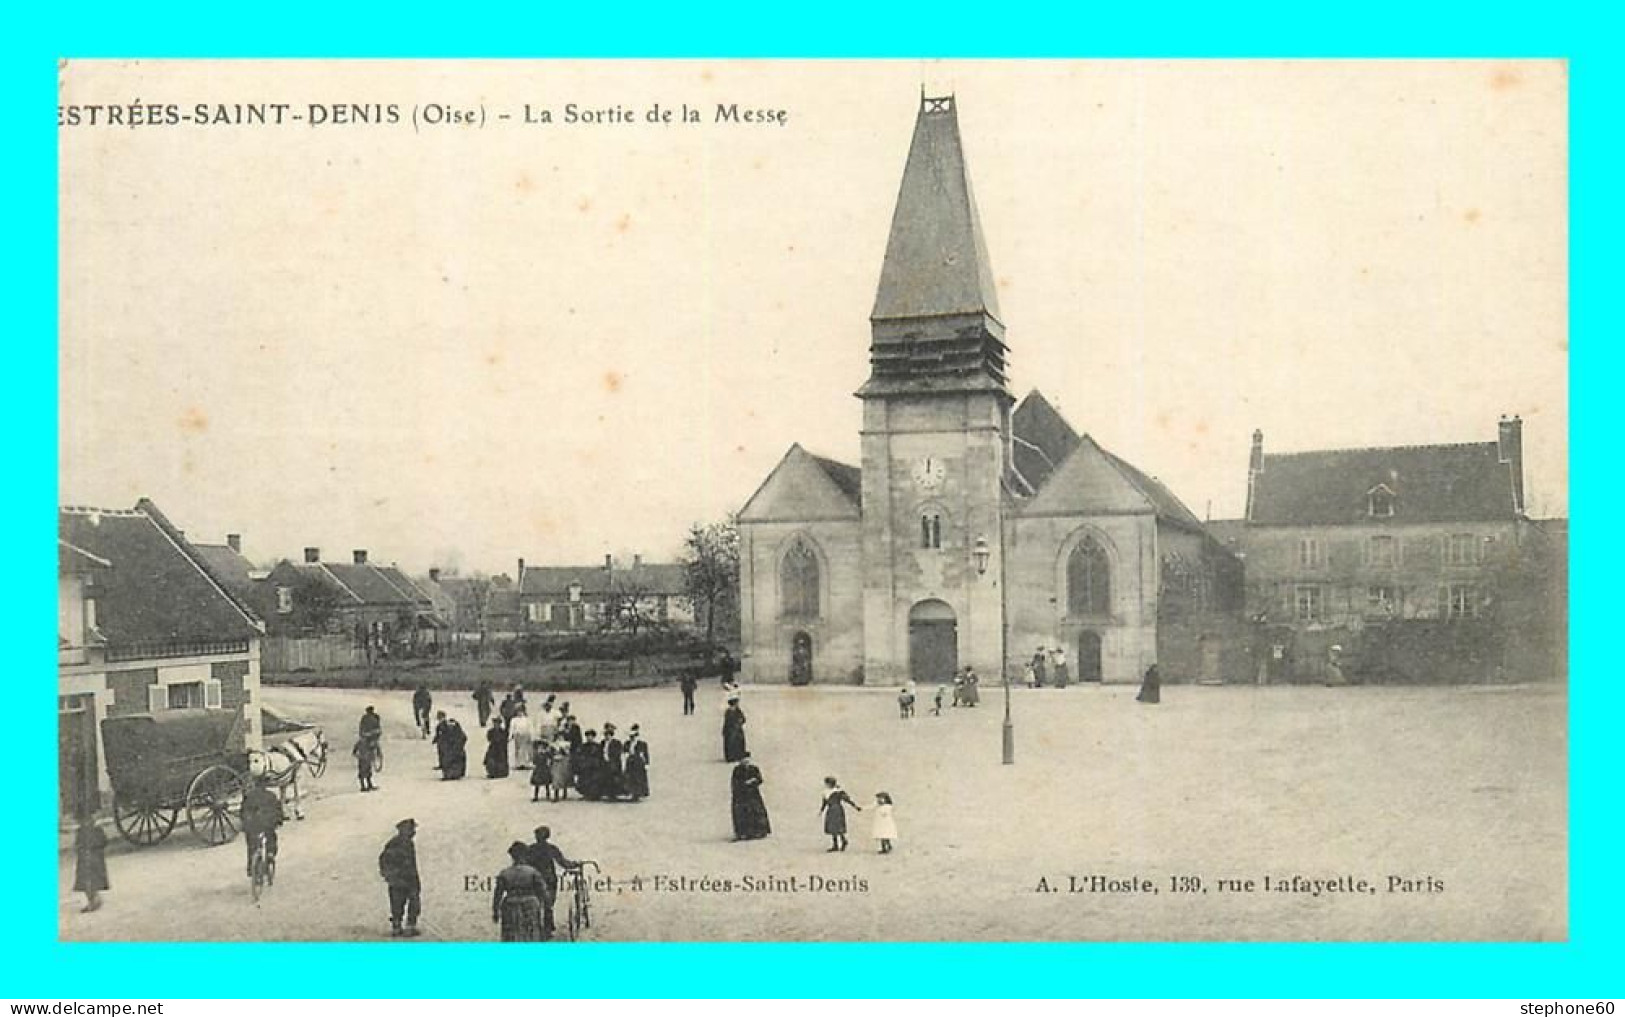 A855 / 233 60 - ESTREES SAINT DENIS Sortie De La Messe - Estrees Saint Denis